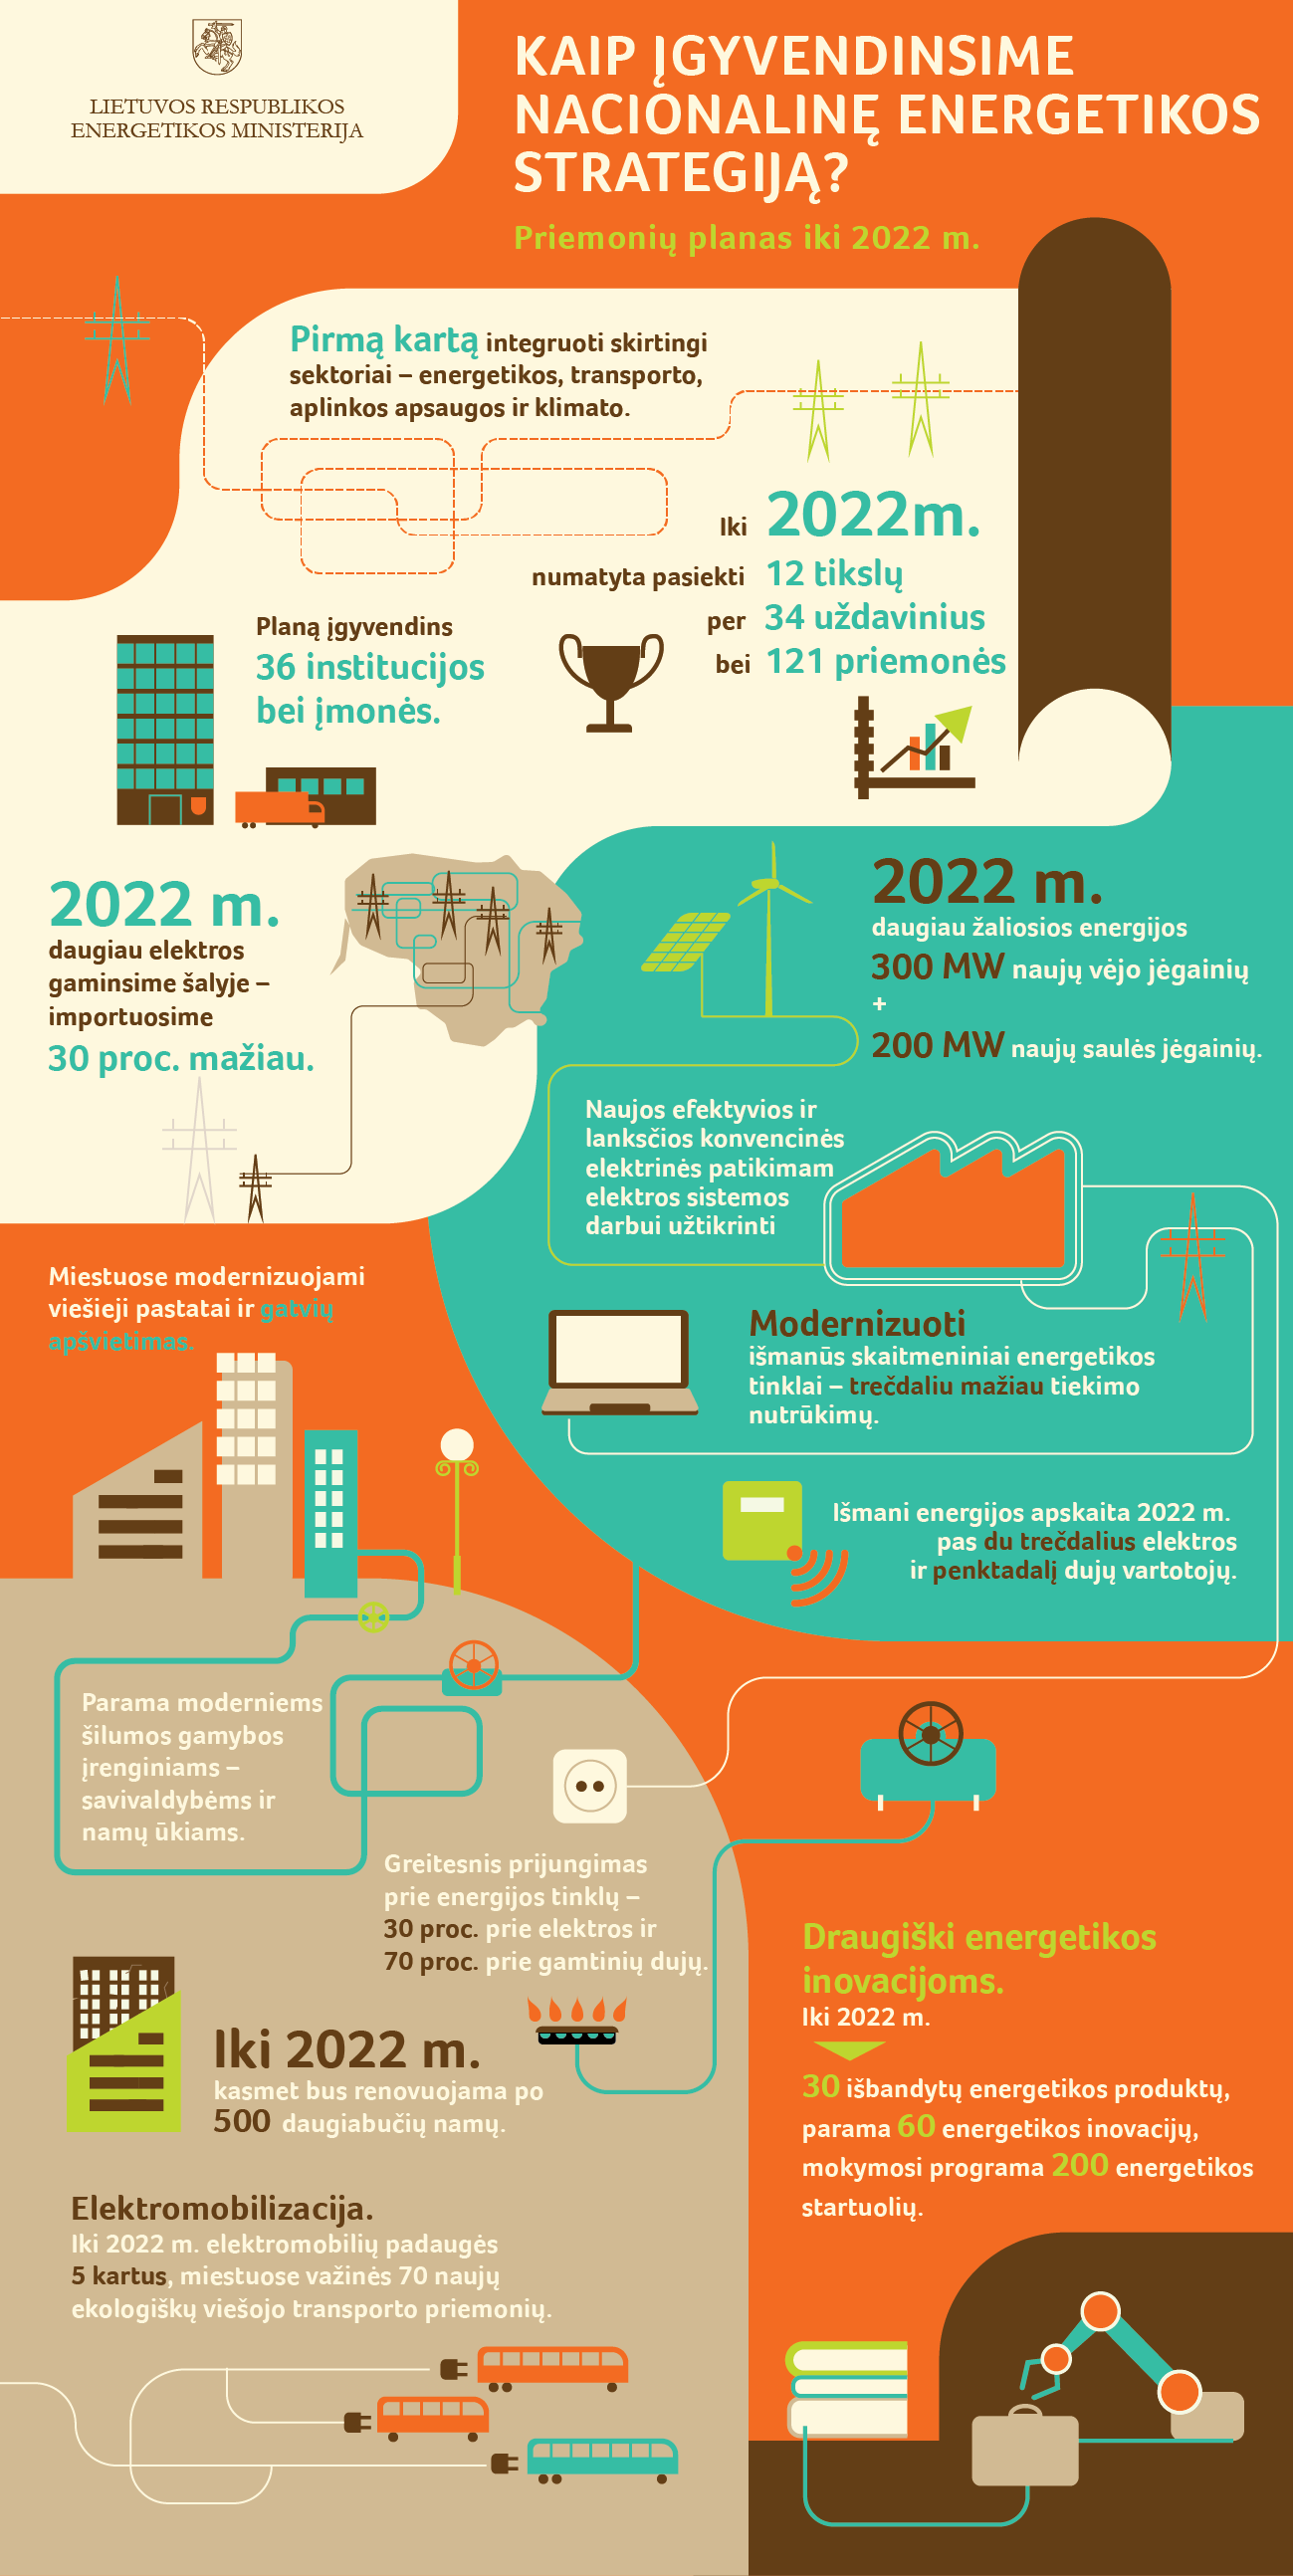 Vyriausybė pritarė Energetikos strategijos įgyvendinimo planui iki 2022 m.